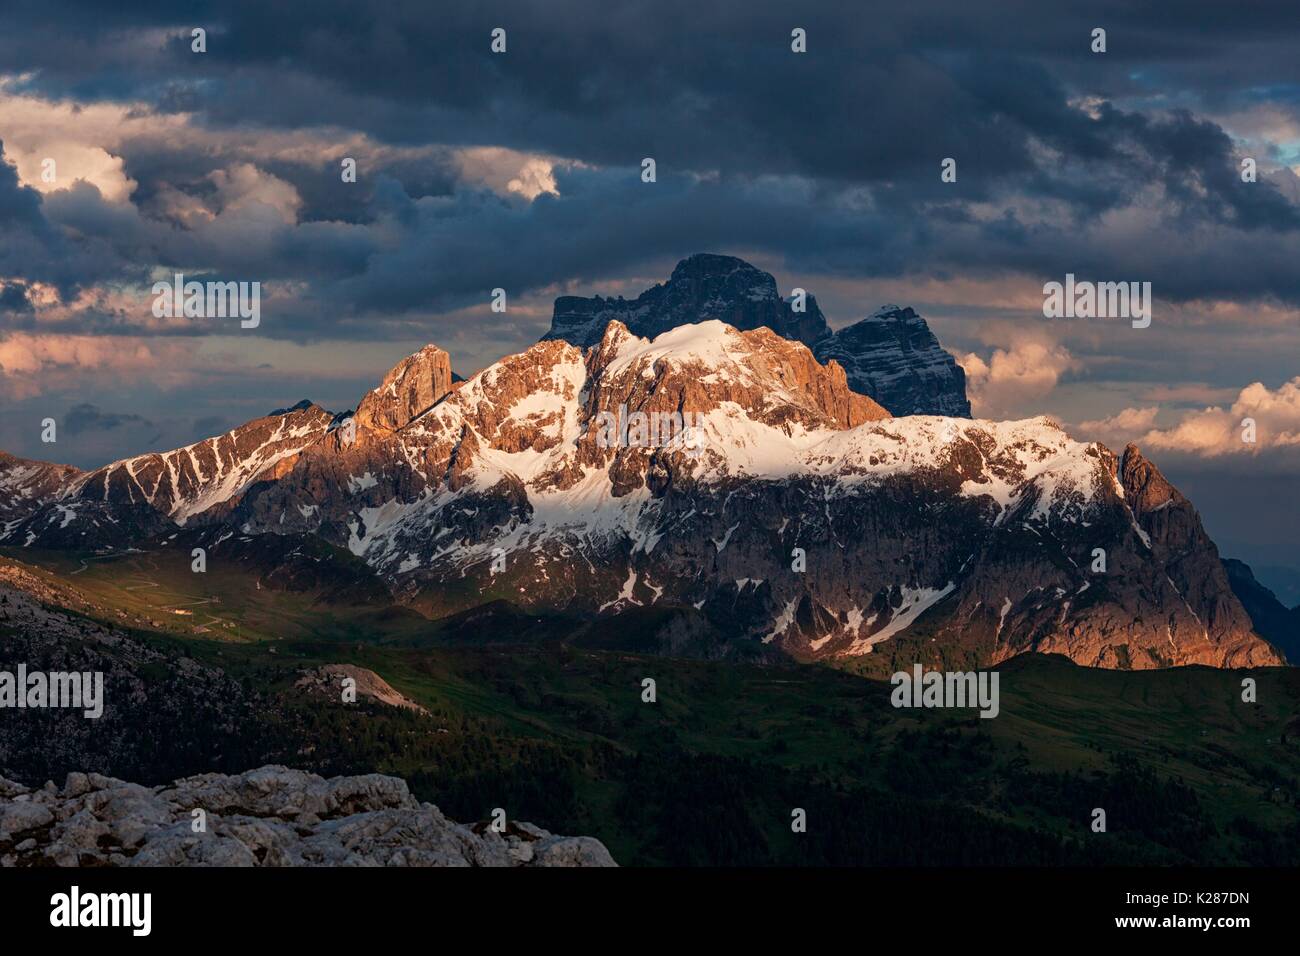 Cernera e Pelmo, Dolomiti, Cortina d'Ampezzo, Belluno, Veneto, Italia. Foto Stock